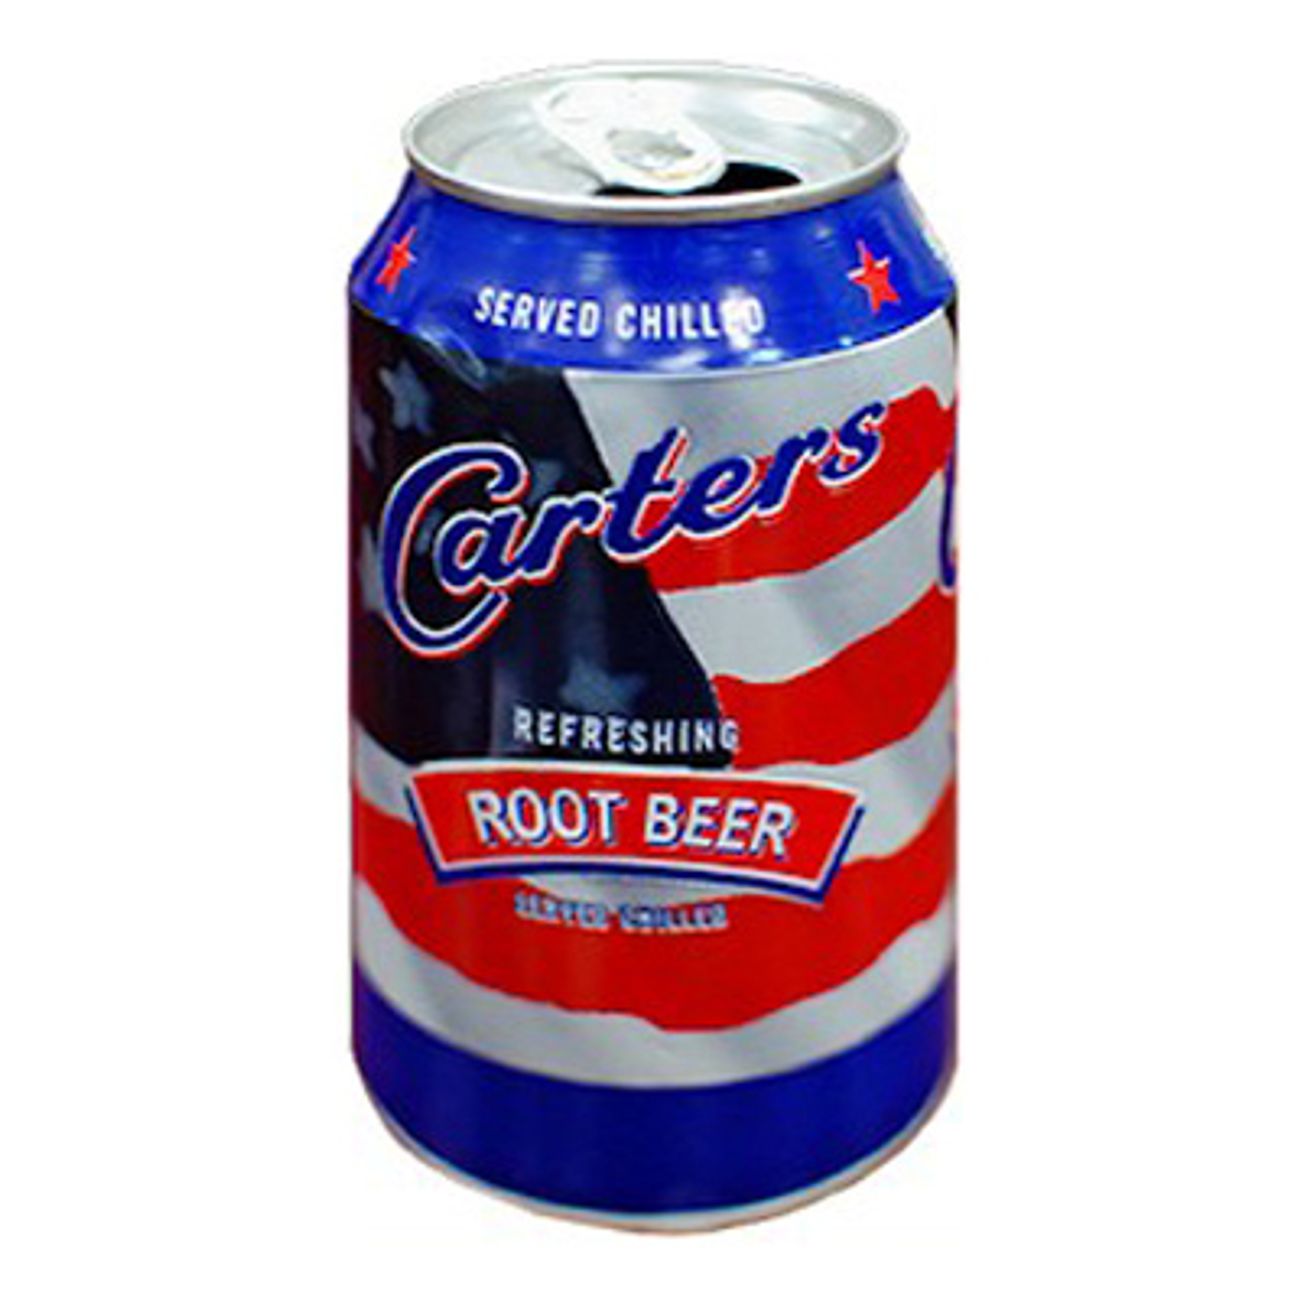 carters-root-beer-1